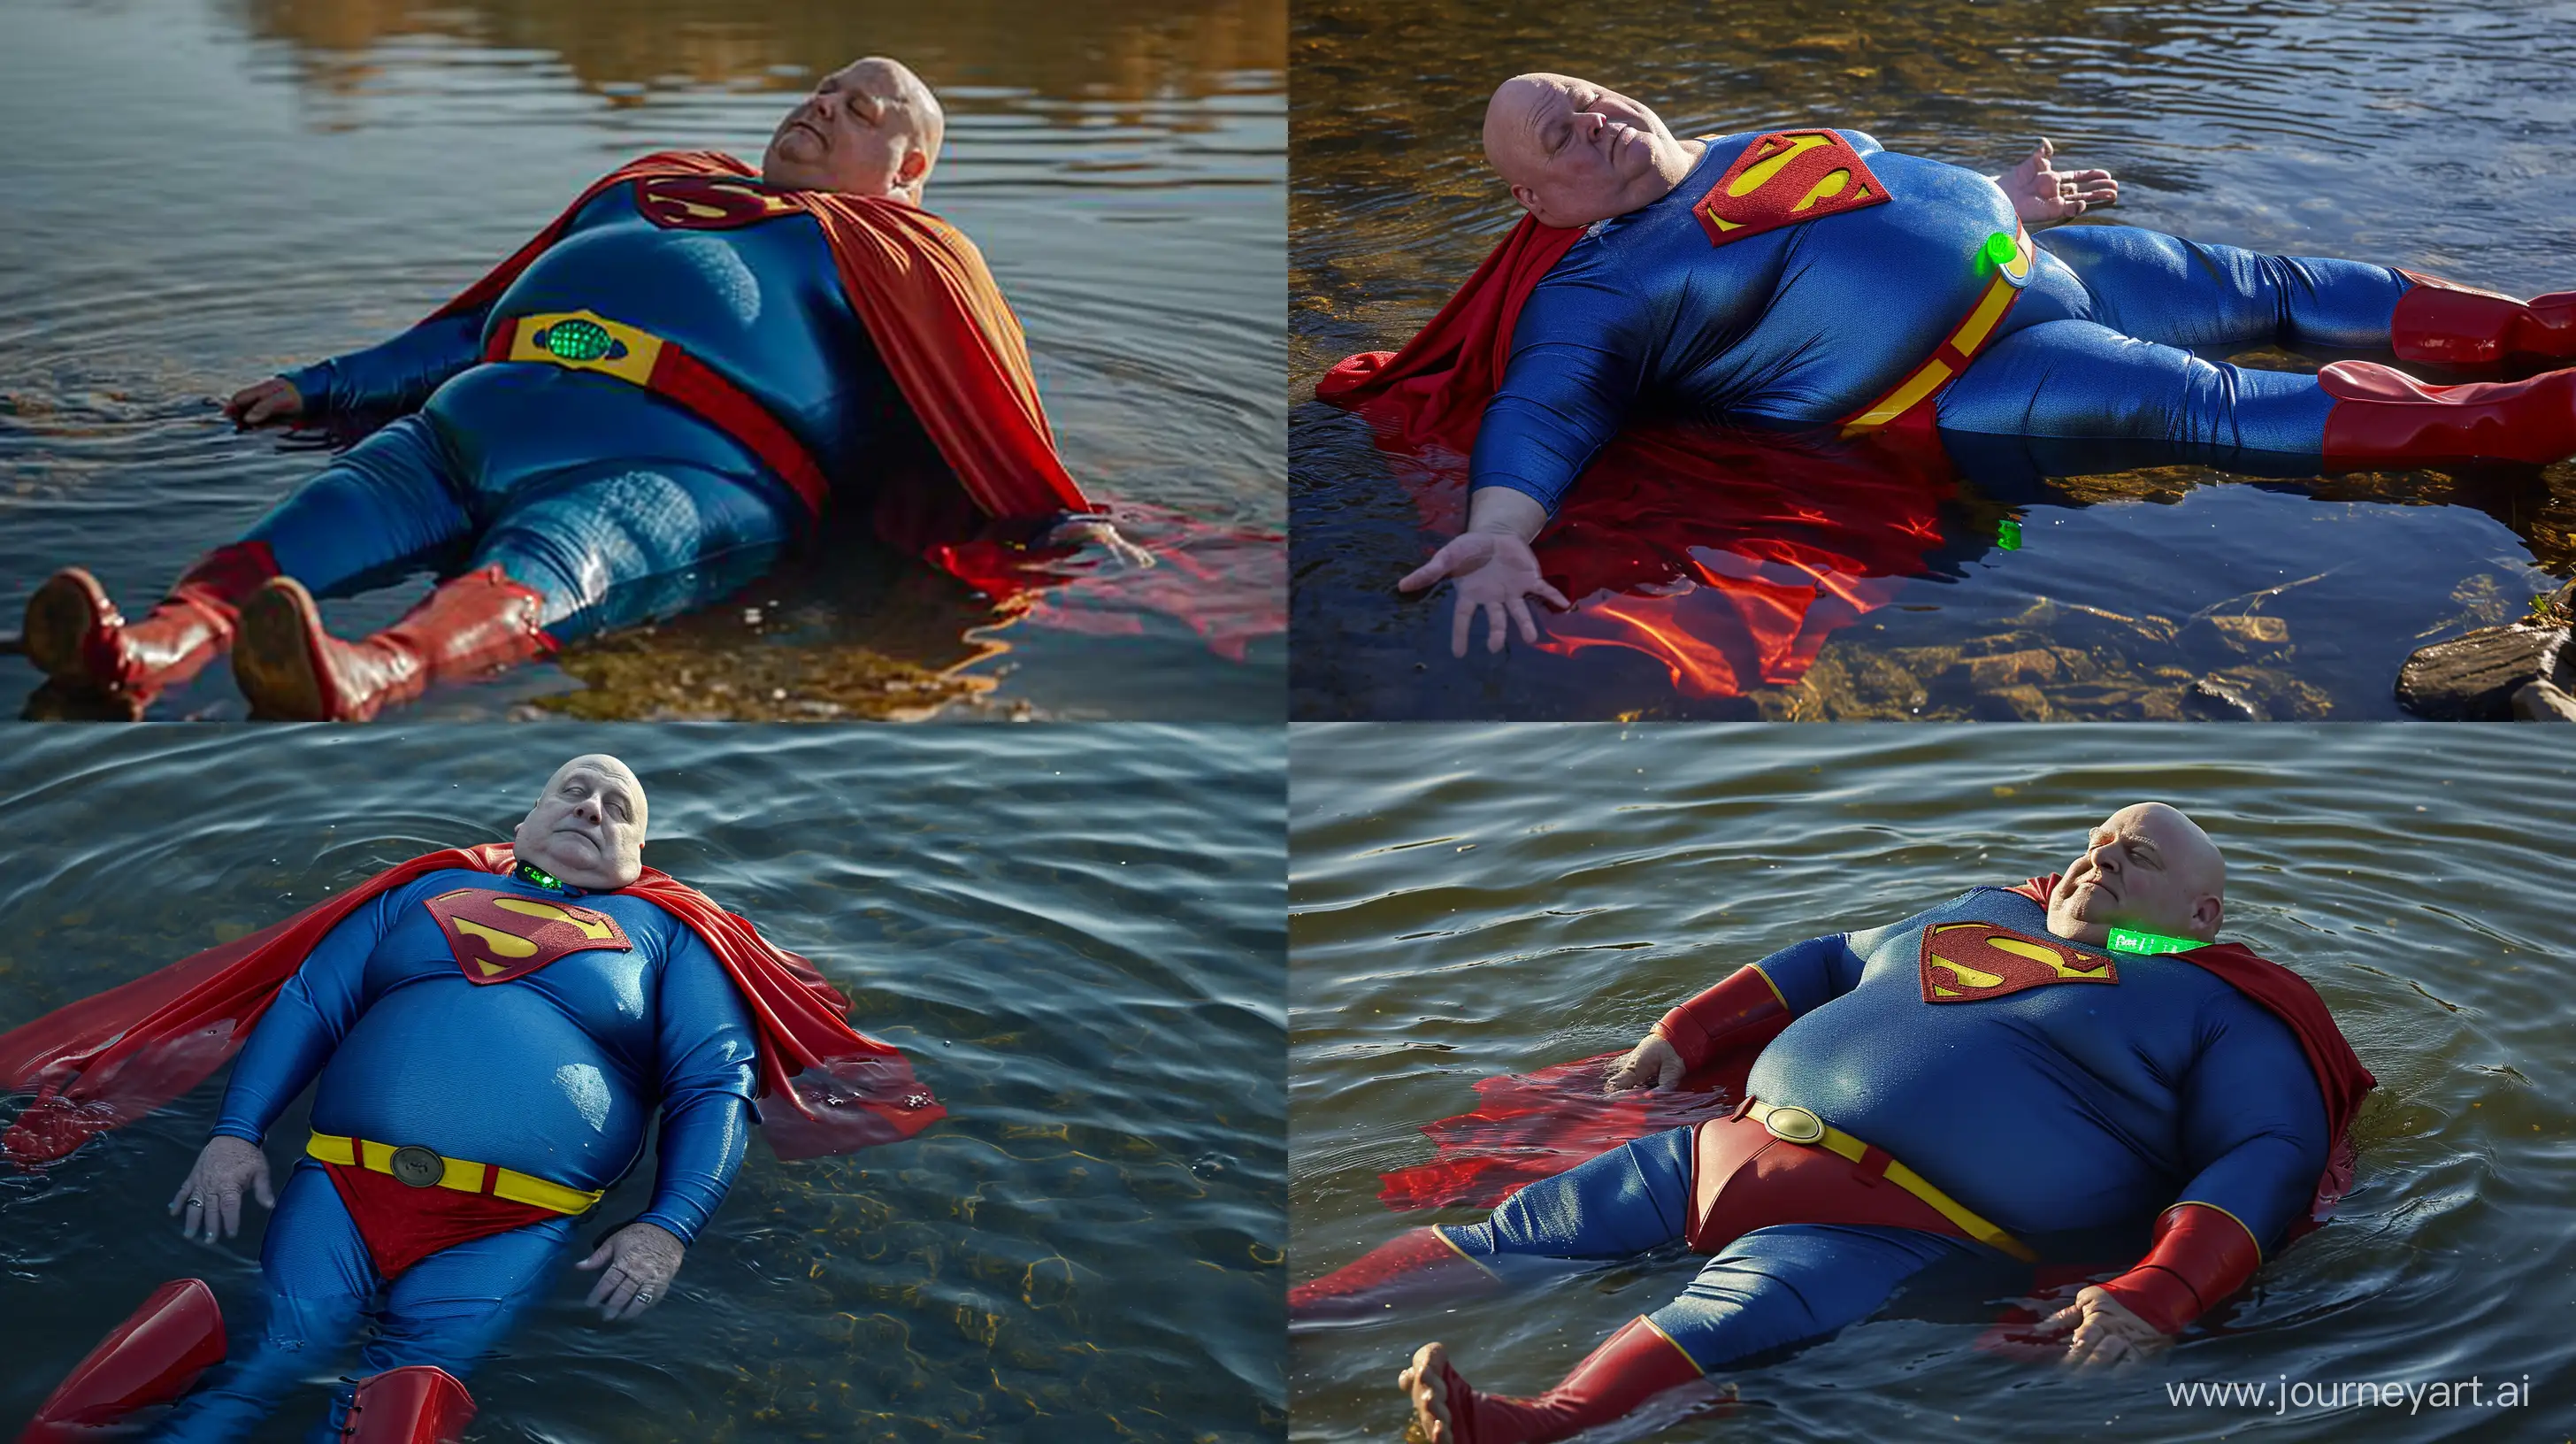 Elderly-Superman-Enjoys-Relaxing-River-Soak-in-Vibrant-Costume